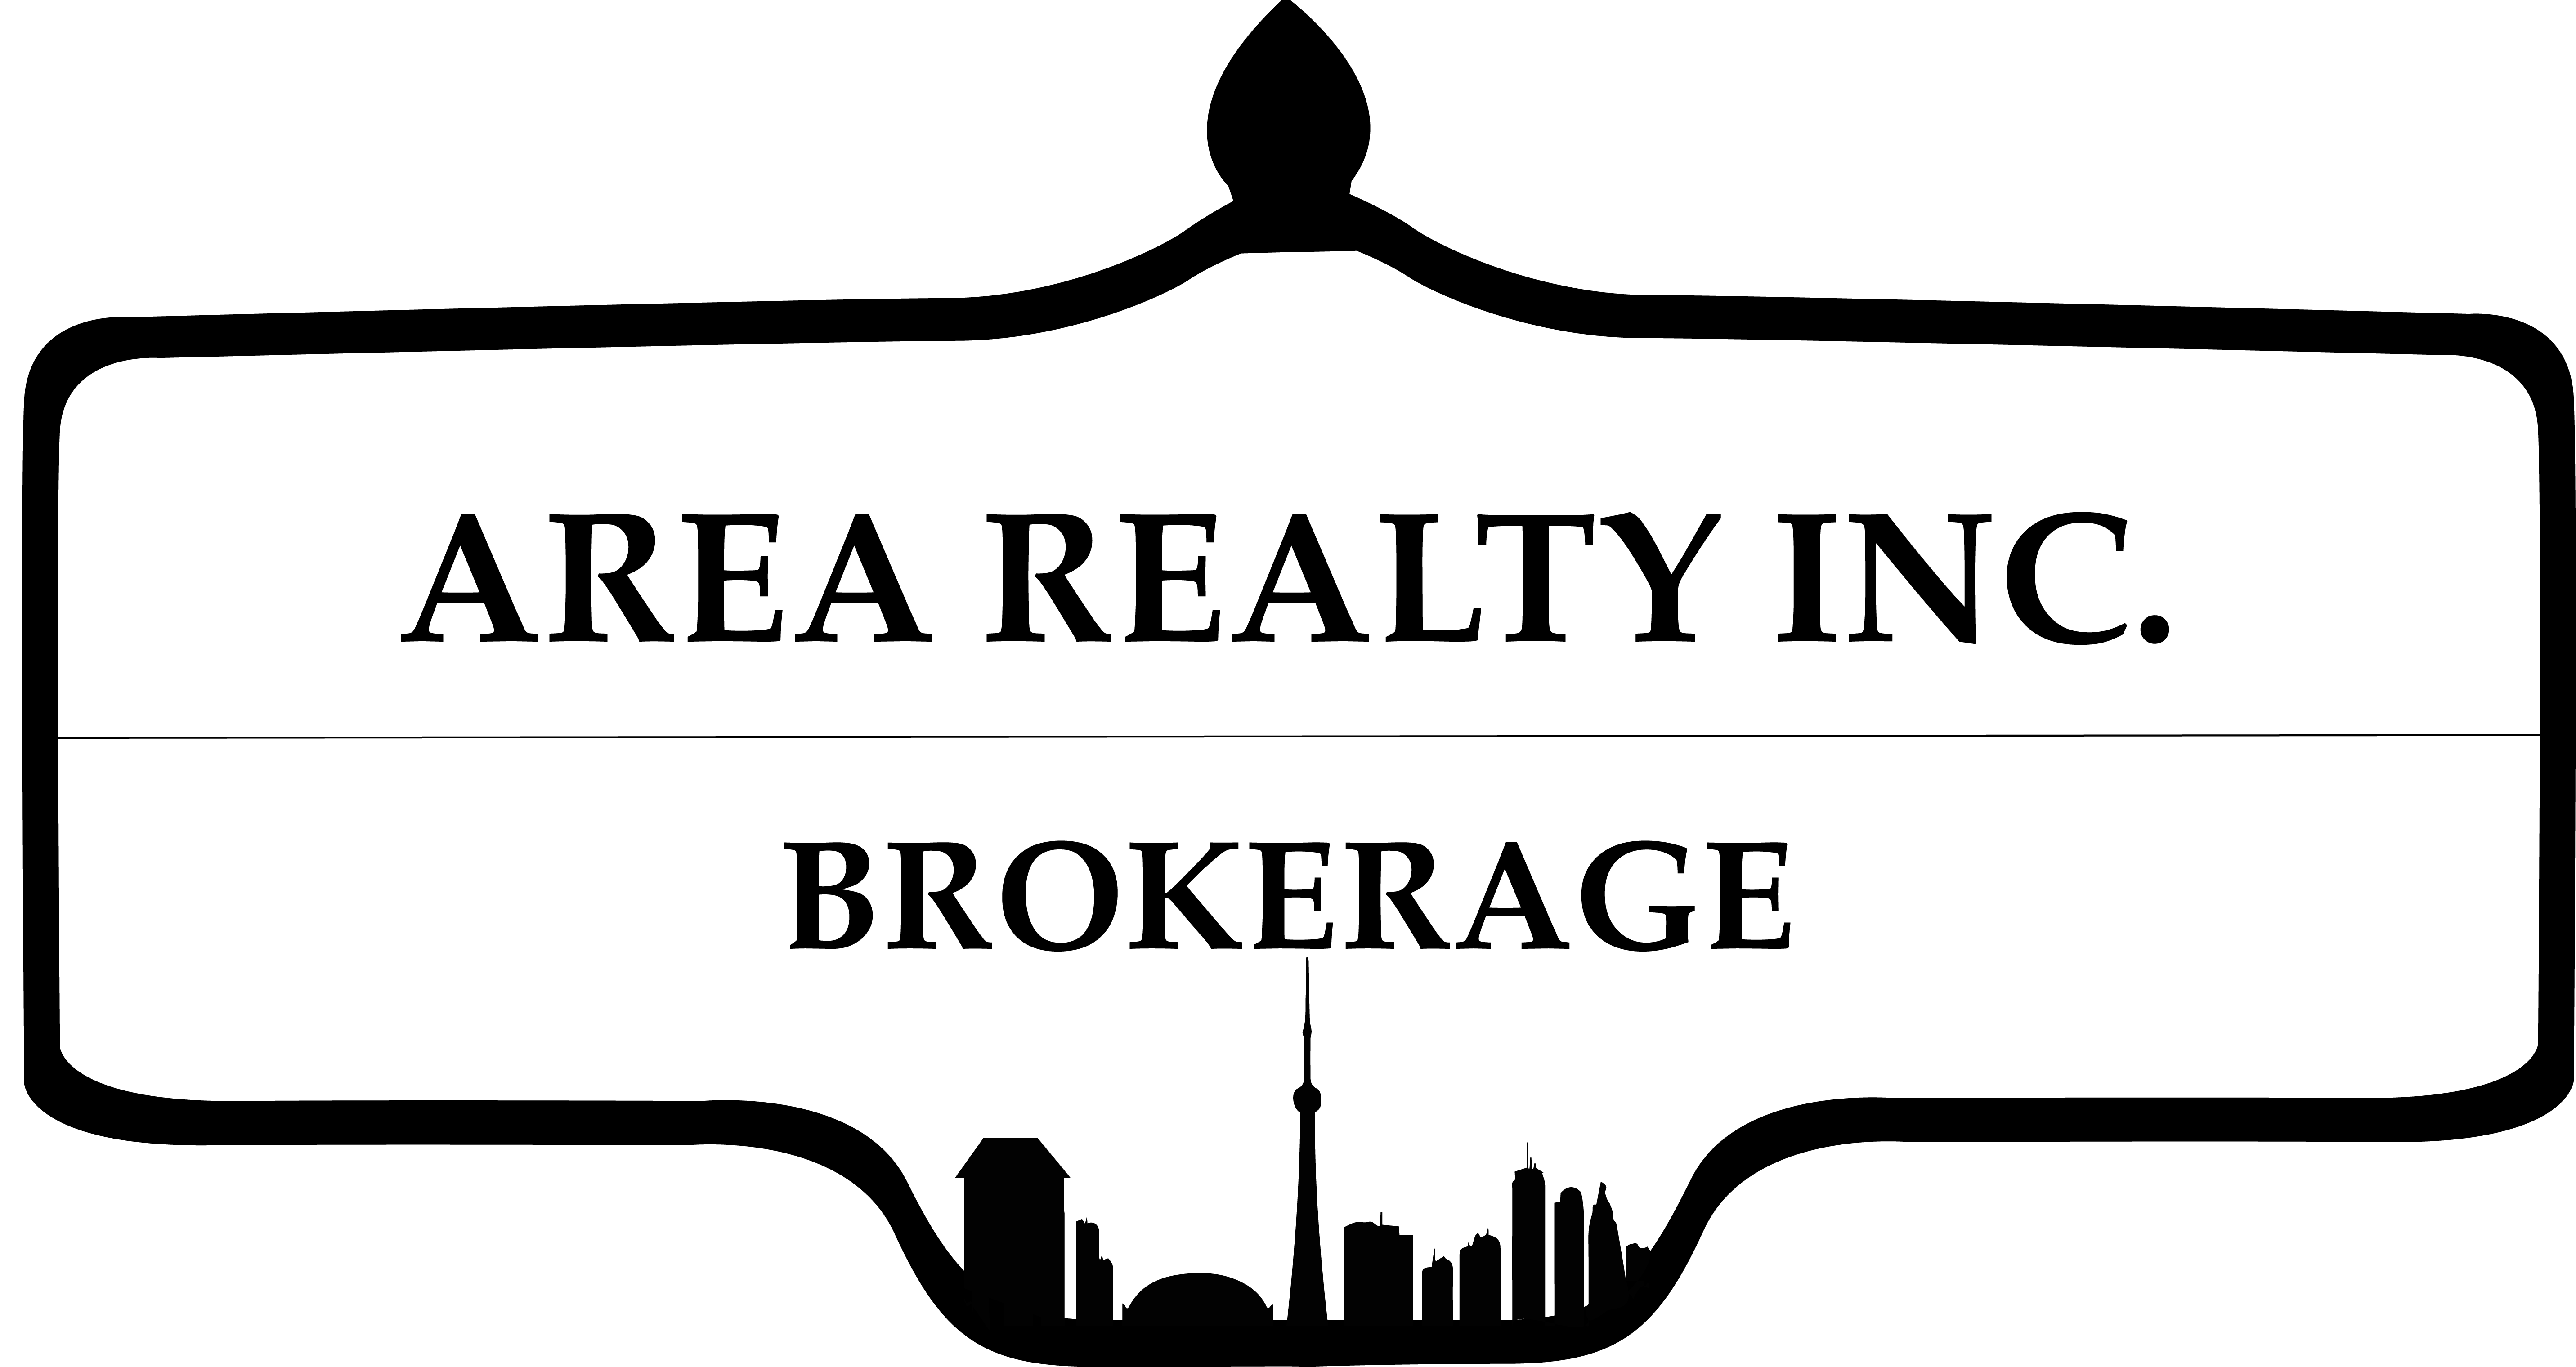 Area Realty Inc., Brokerage